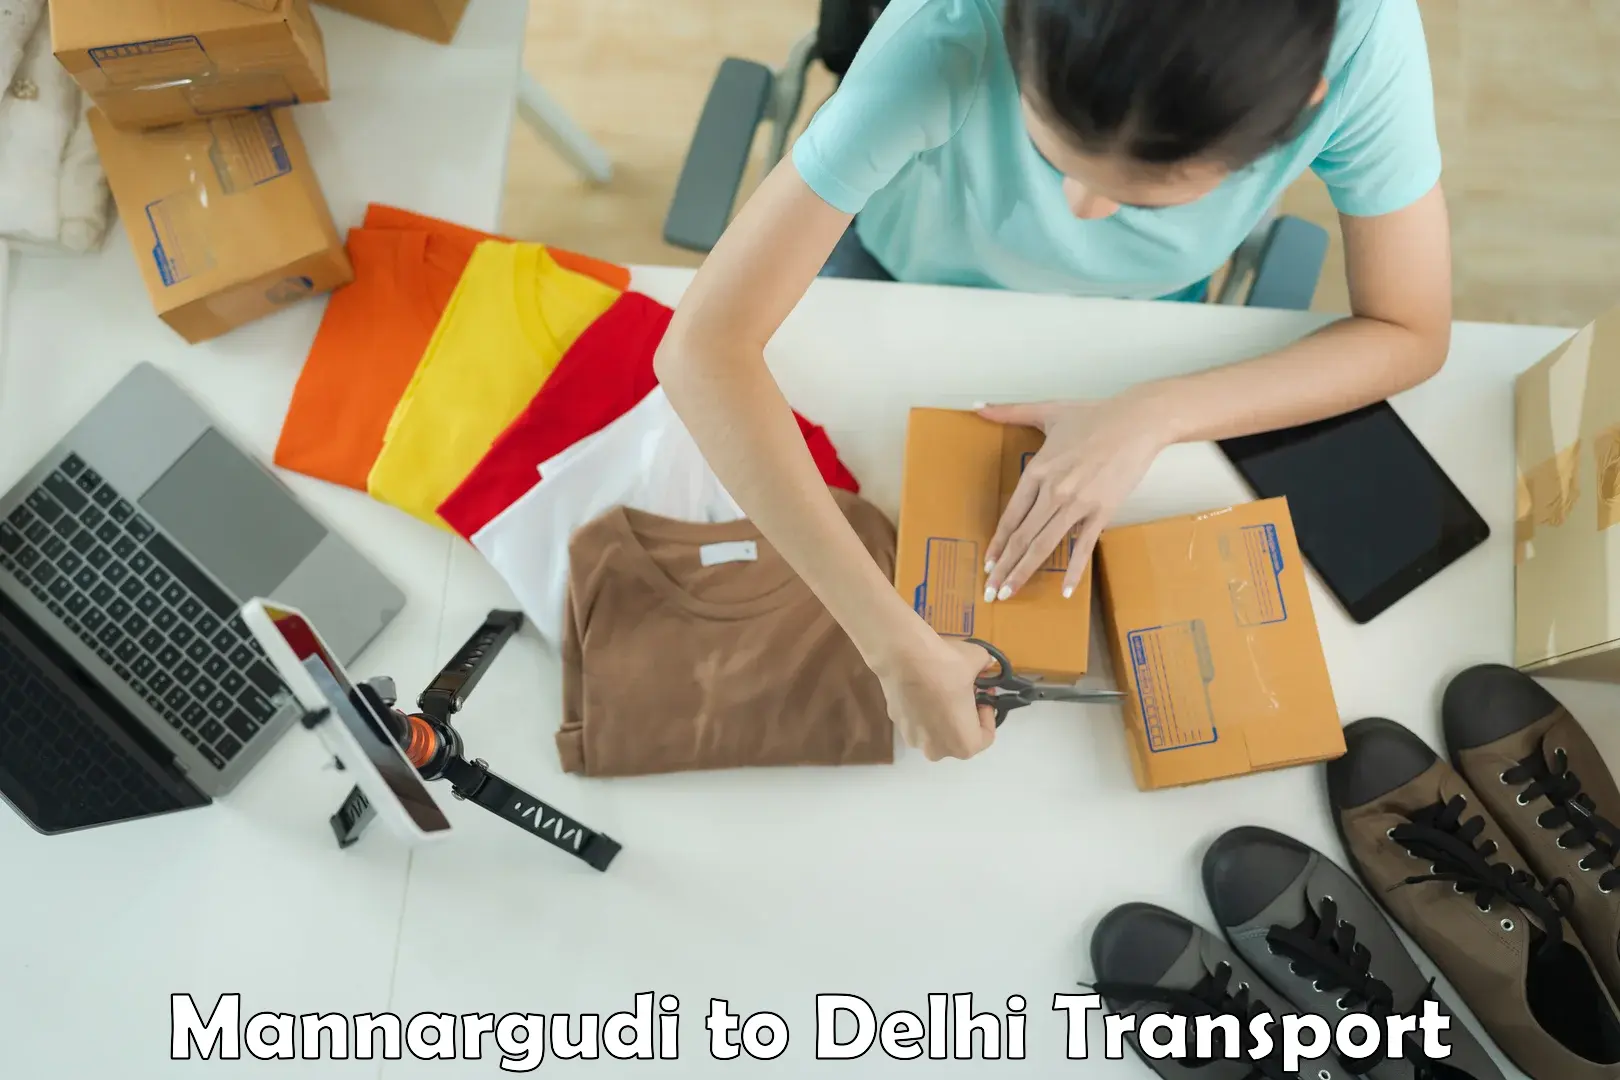 Furniture transport service Mannargudi to NCR